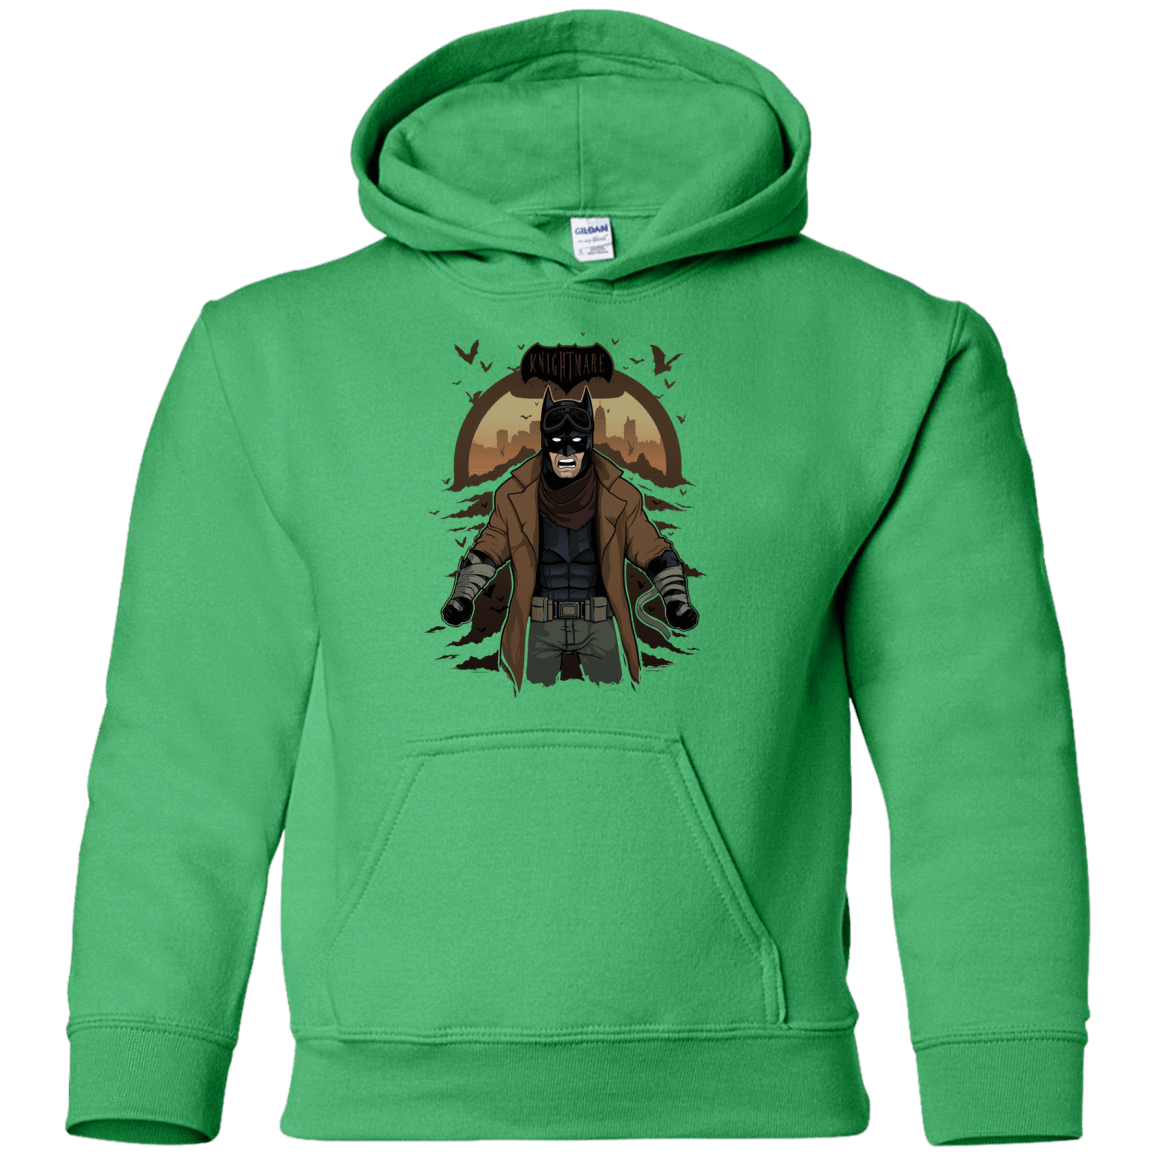 Sweatshirts Irish Green / YS Knightmare Youth Hoodie